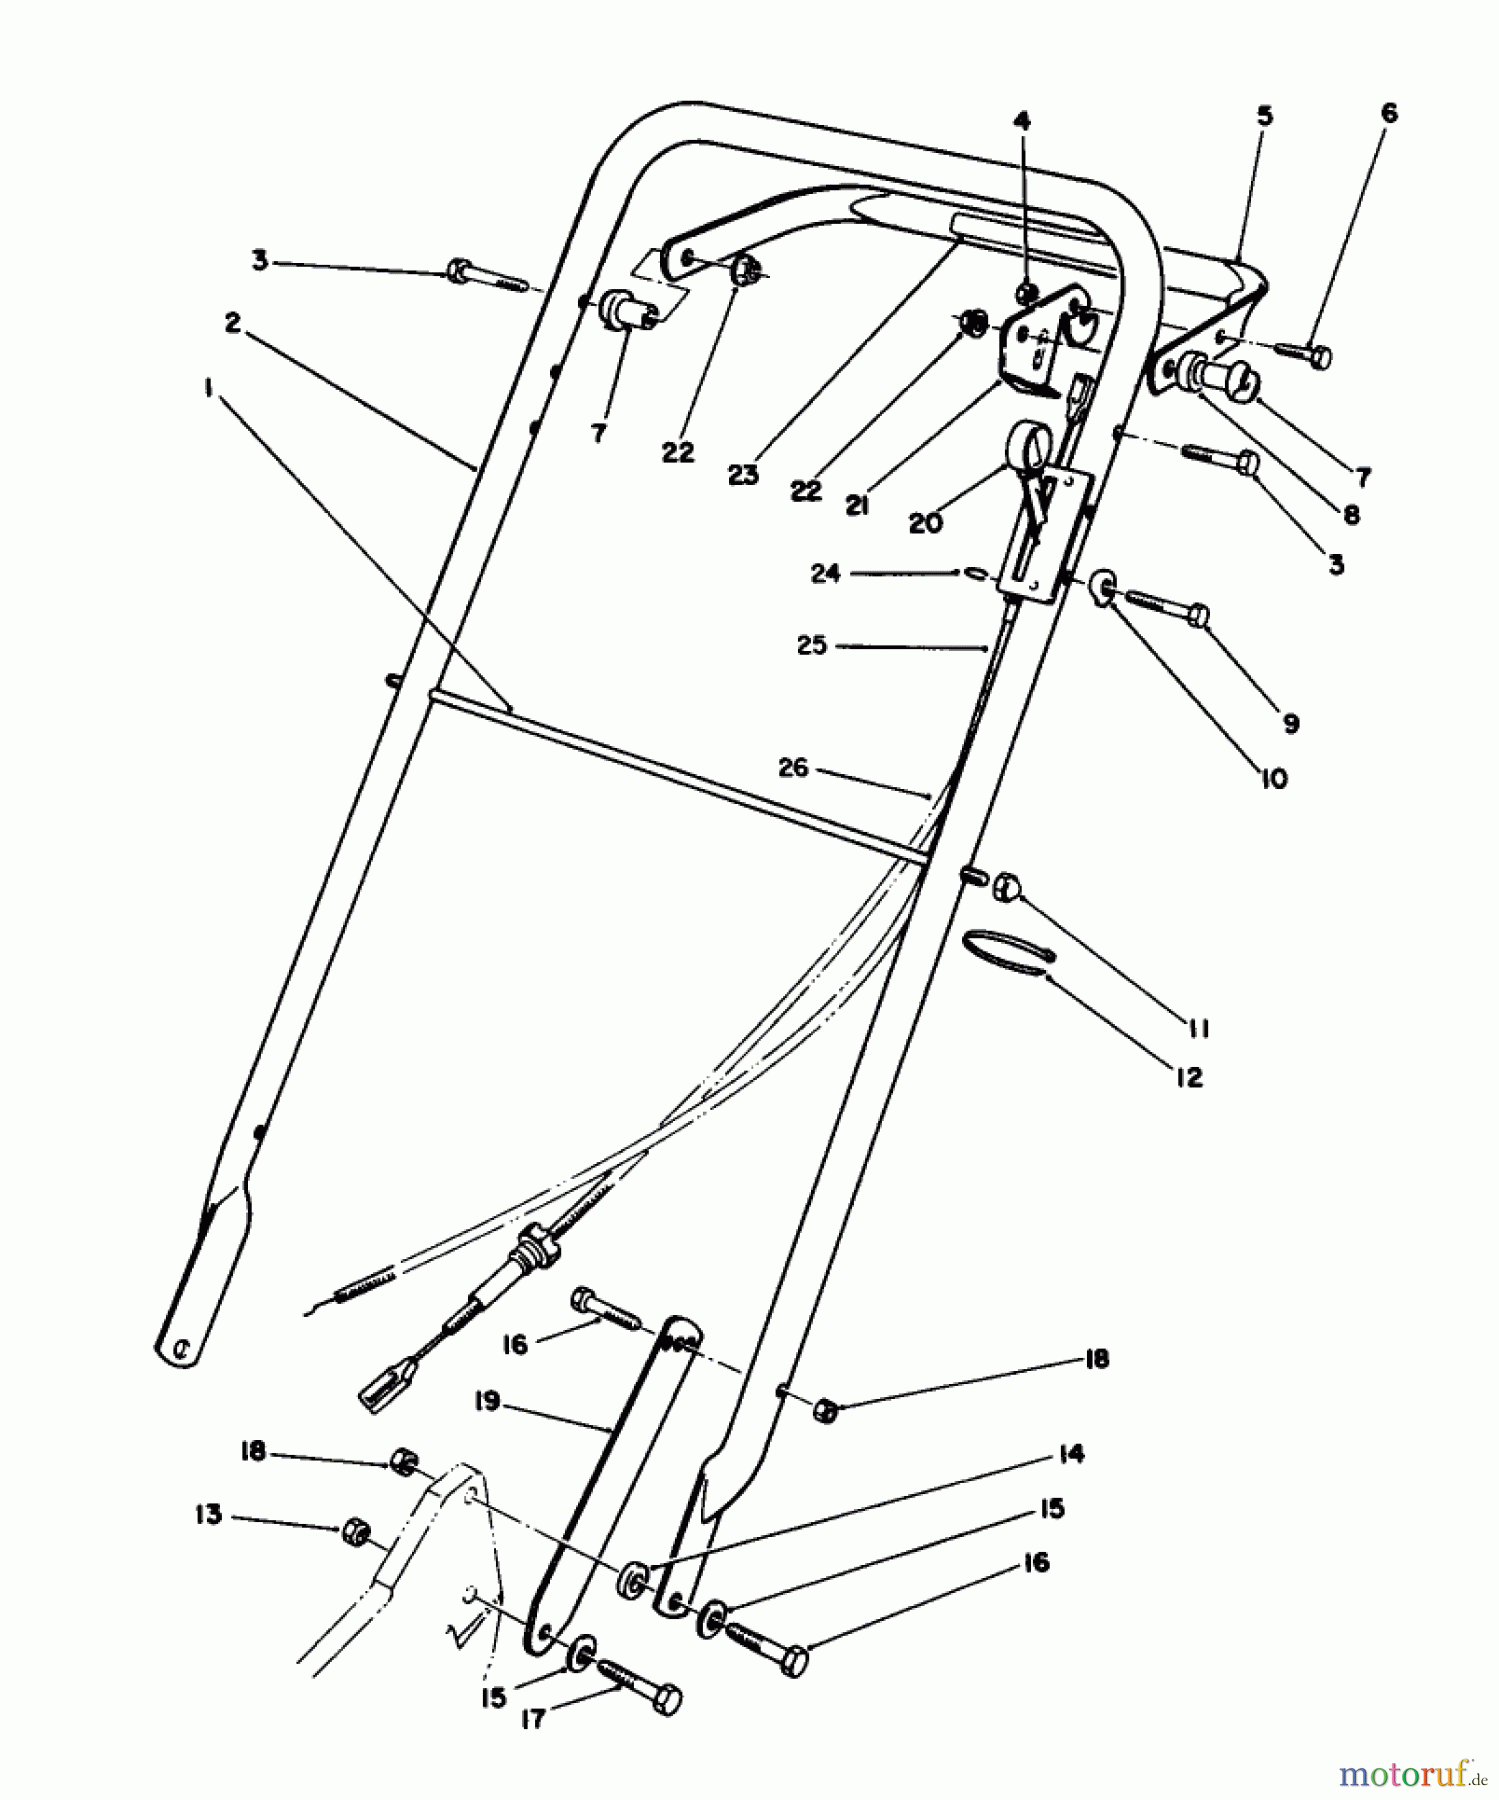  Toro Neu Mowers, Walk-Behind Seite 2 22036 - Toro Lawnmower, 1991 (1000001-1999999) HANDLE ASSEMBLY